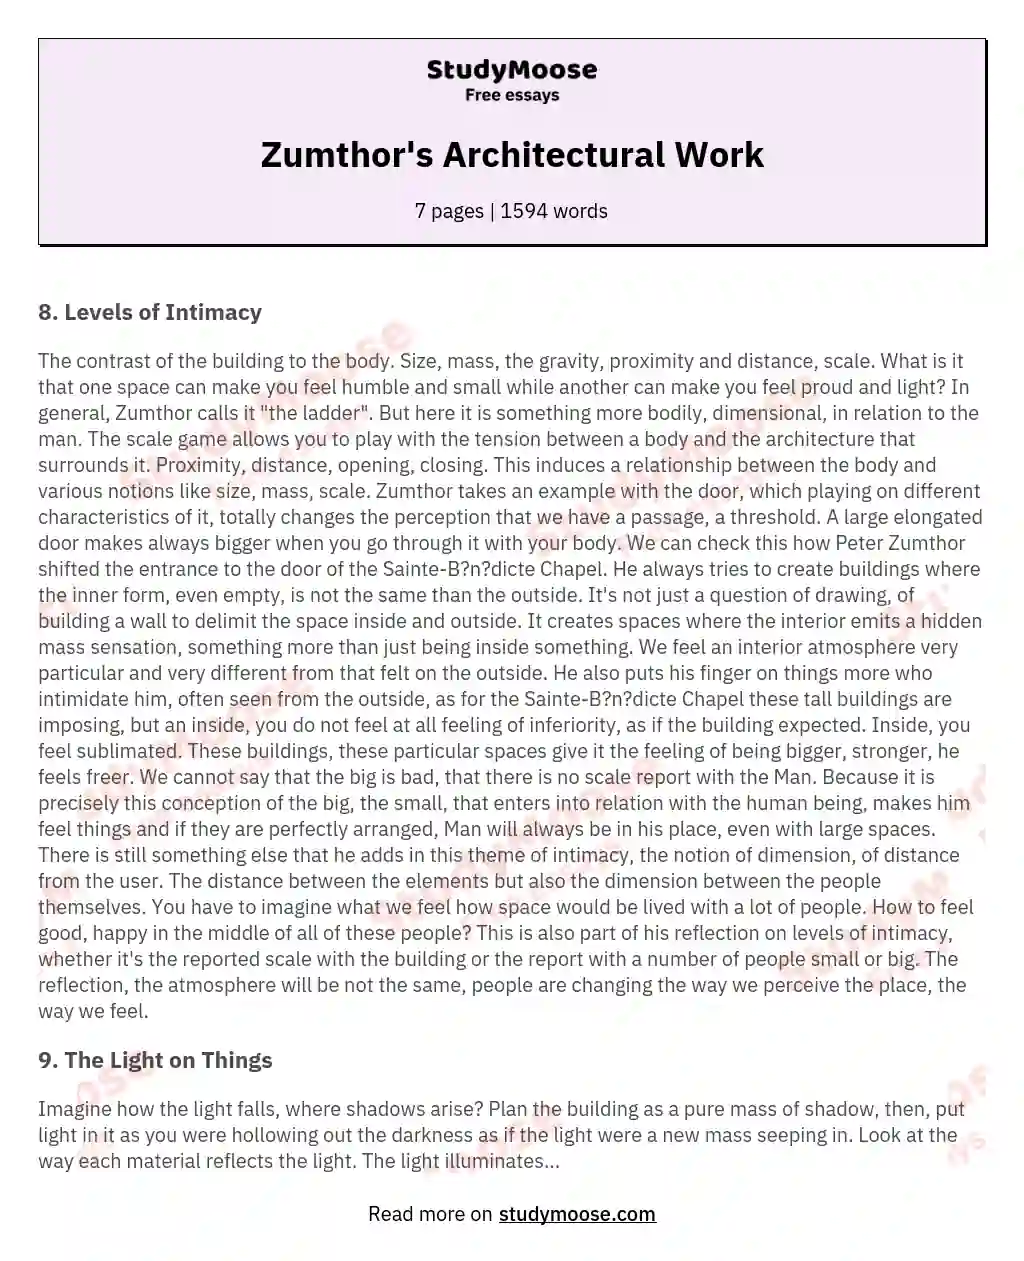 Zumthor's Architectural Work essay